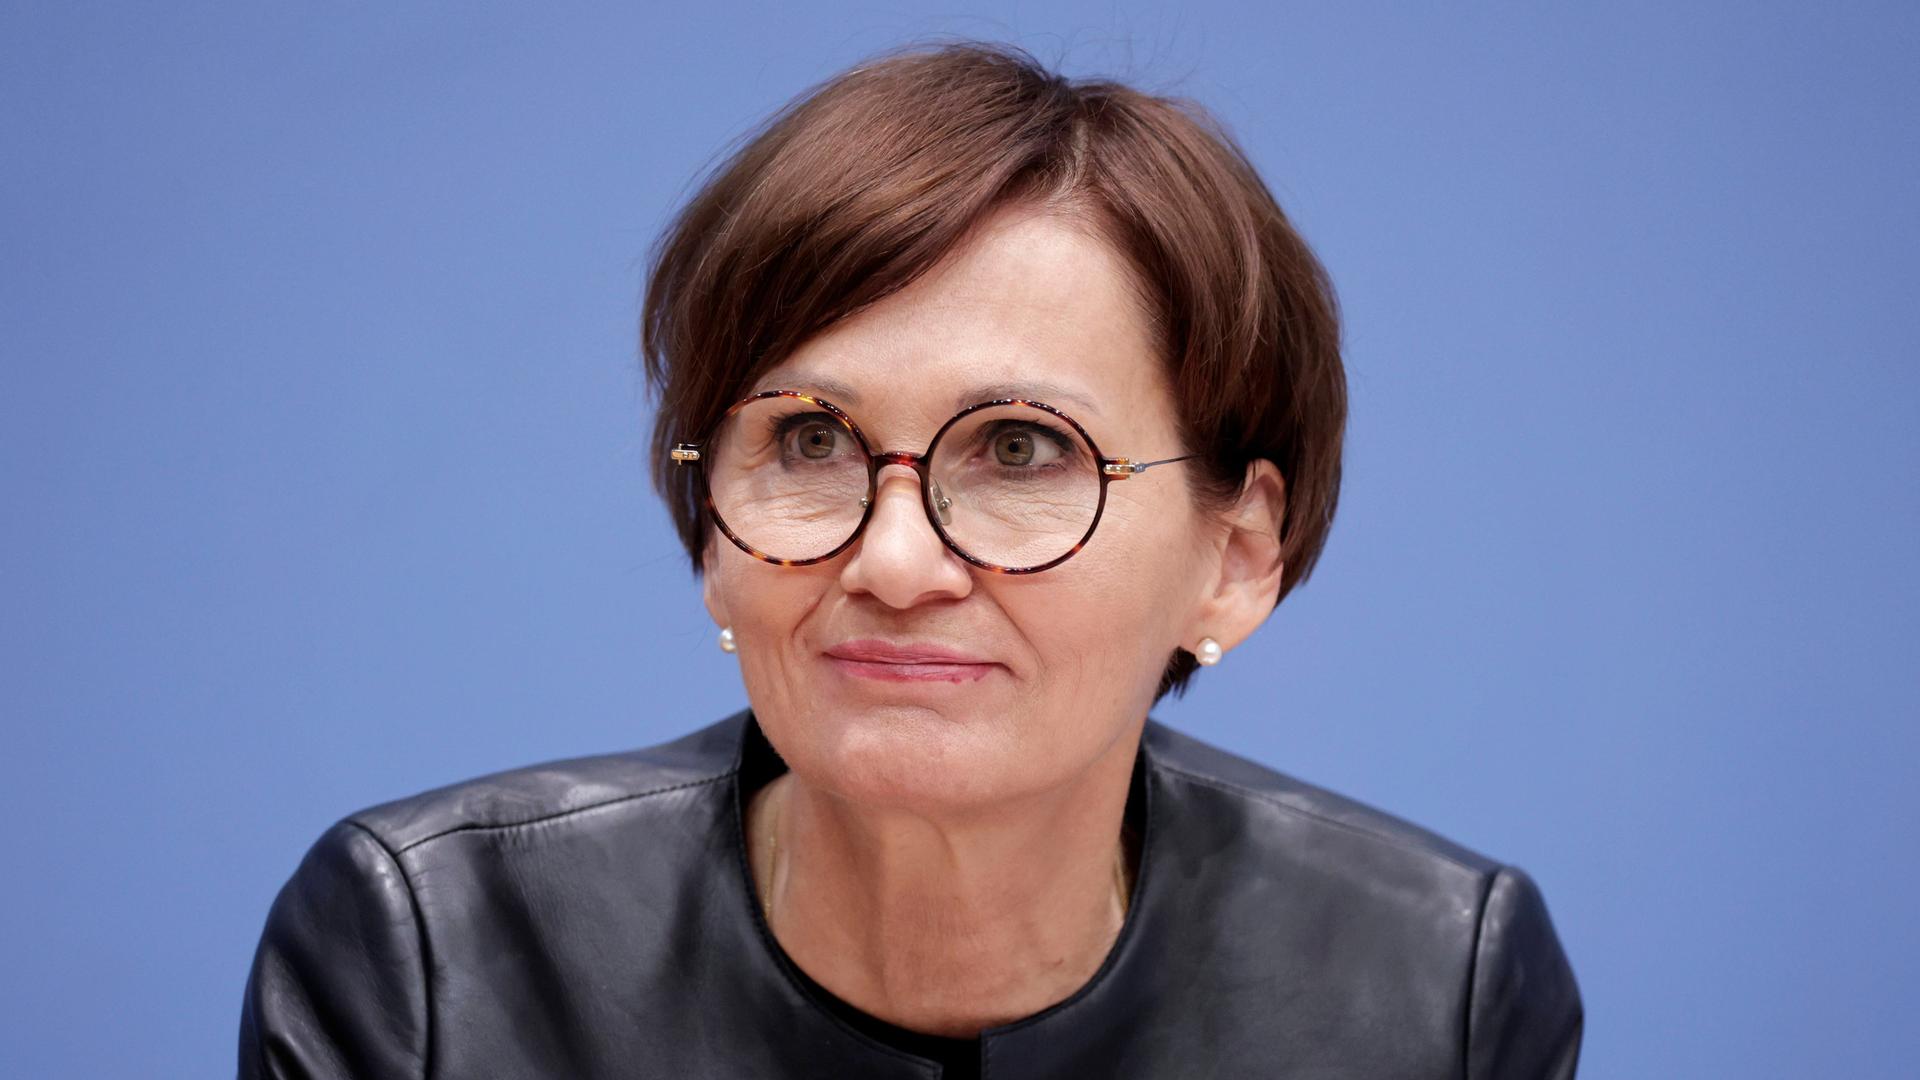 Die FDP-Politikerin Bettina Stark-Watzinger, Bundesministerin für Bildung und Forschung, im Porträt.